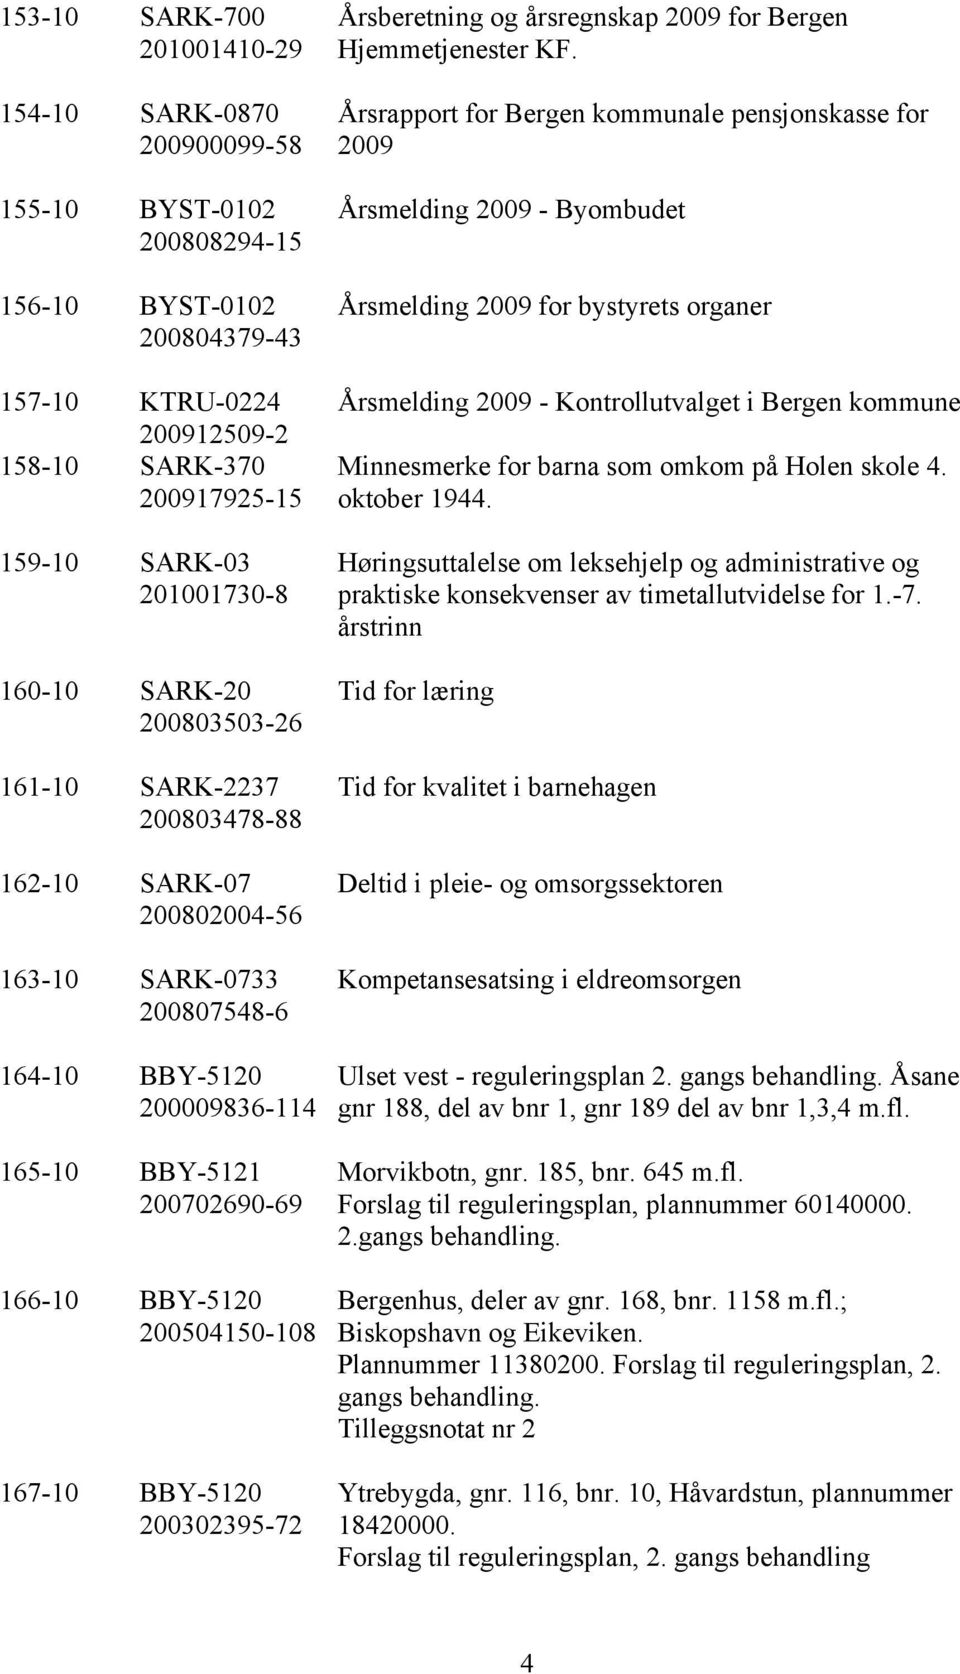 BBY-5120 200504150-108 167-10 BBY-5120 200302395-72 Årsberetning og årsregnskap 2009 for Bergen Hjemmetjenester KF.